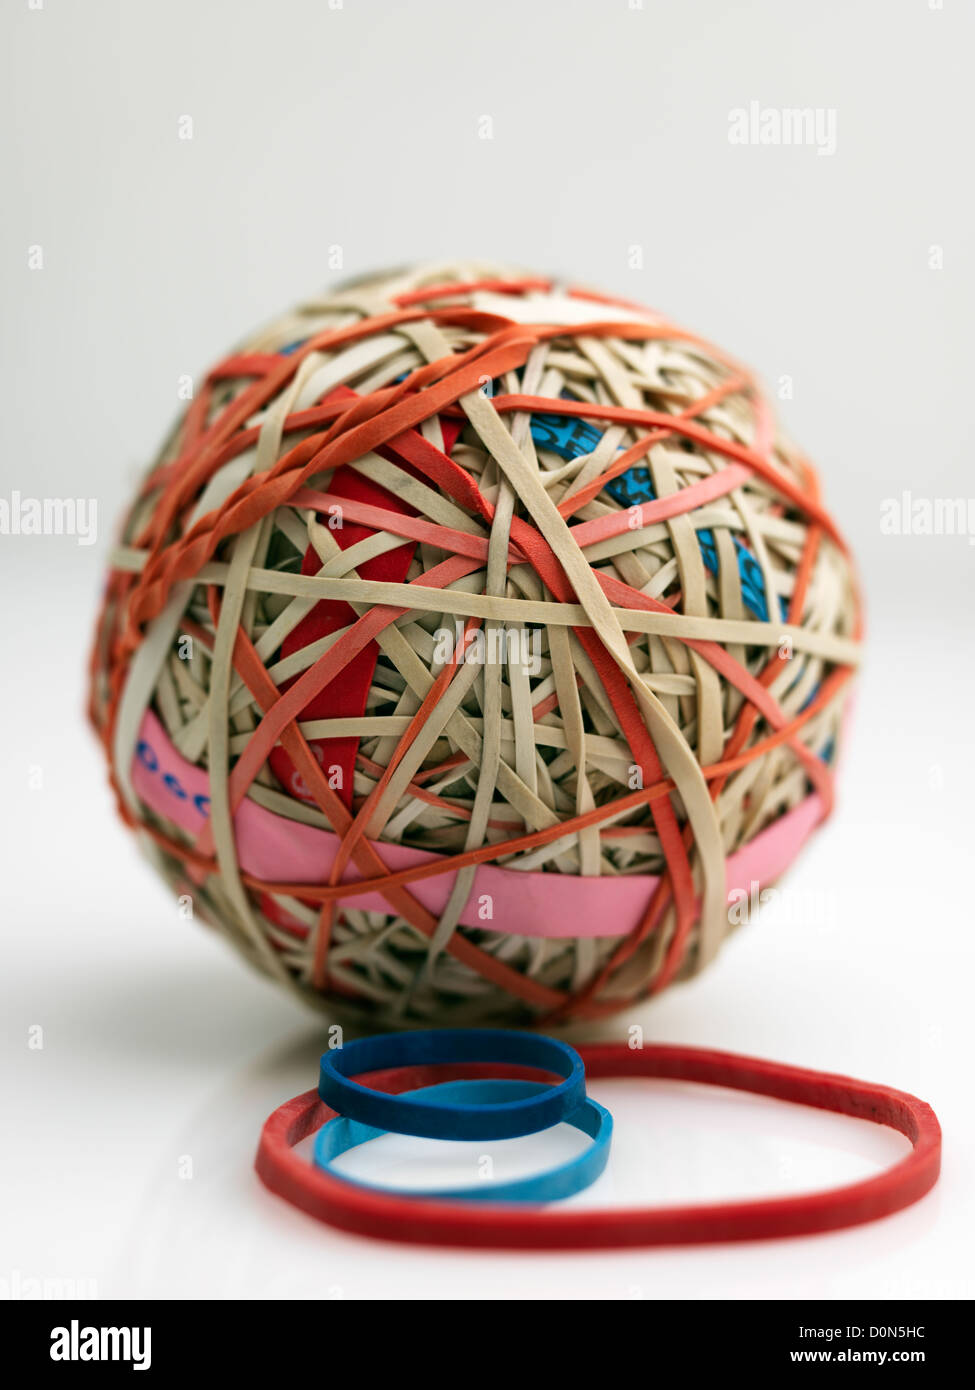 Gummiband-Ball, Kugel, bestehend aus Gummibänder übereinander gewickelt  Stockfotografie - Alamy